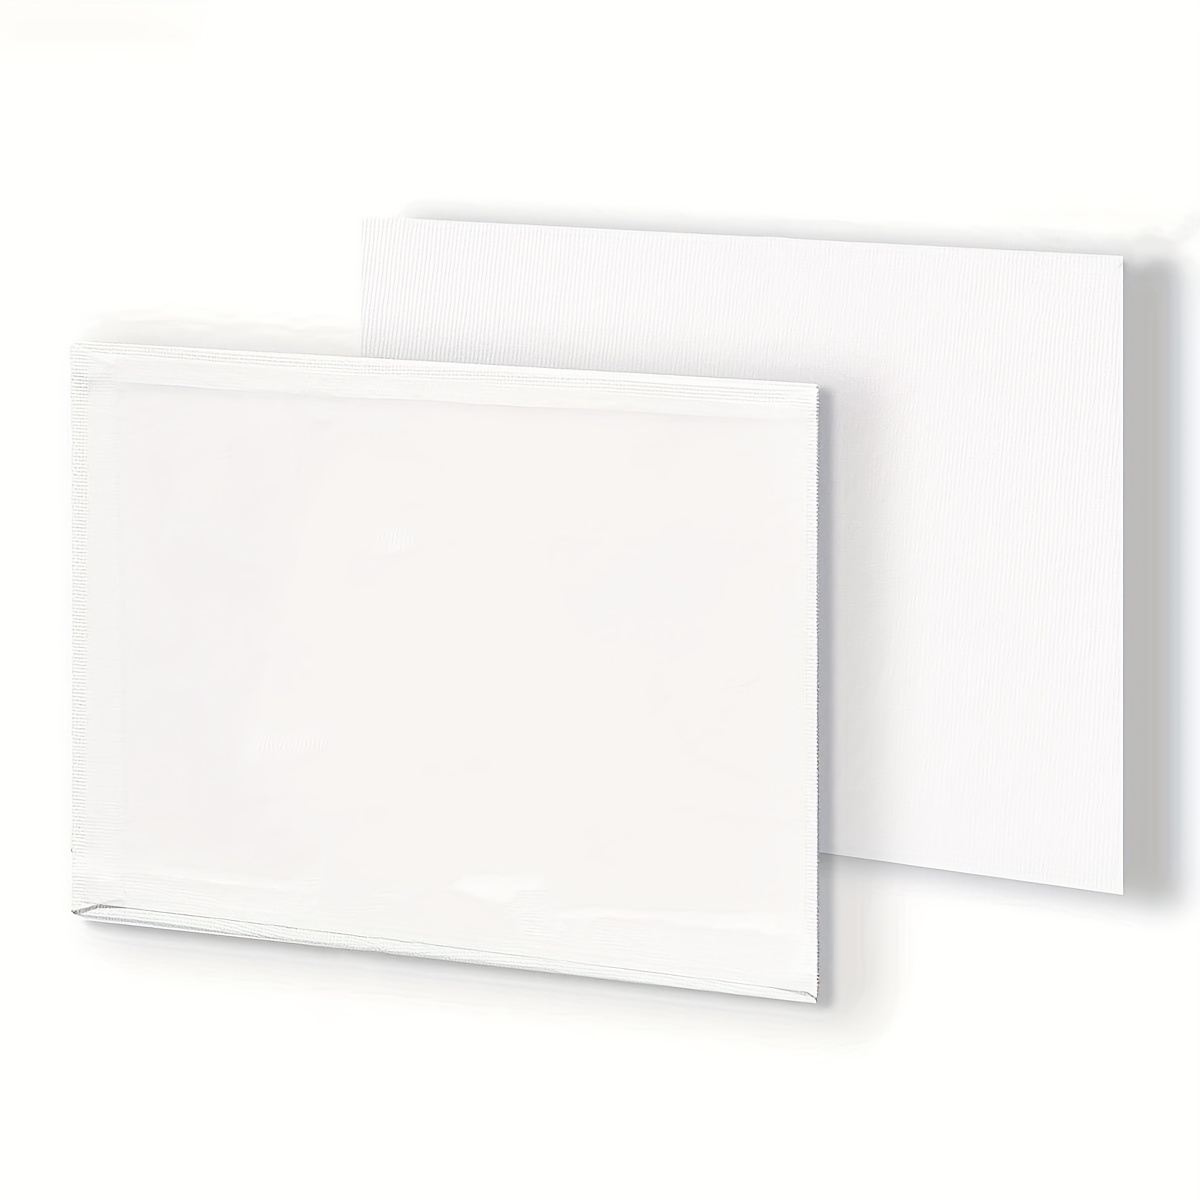 Canvas Board White 30 X 25 cm